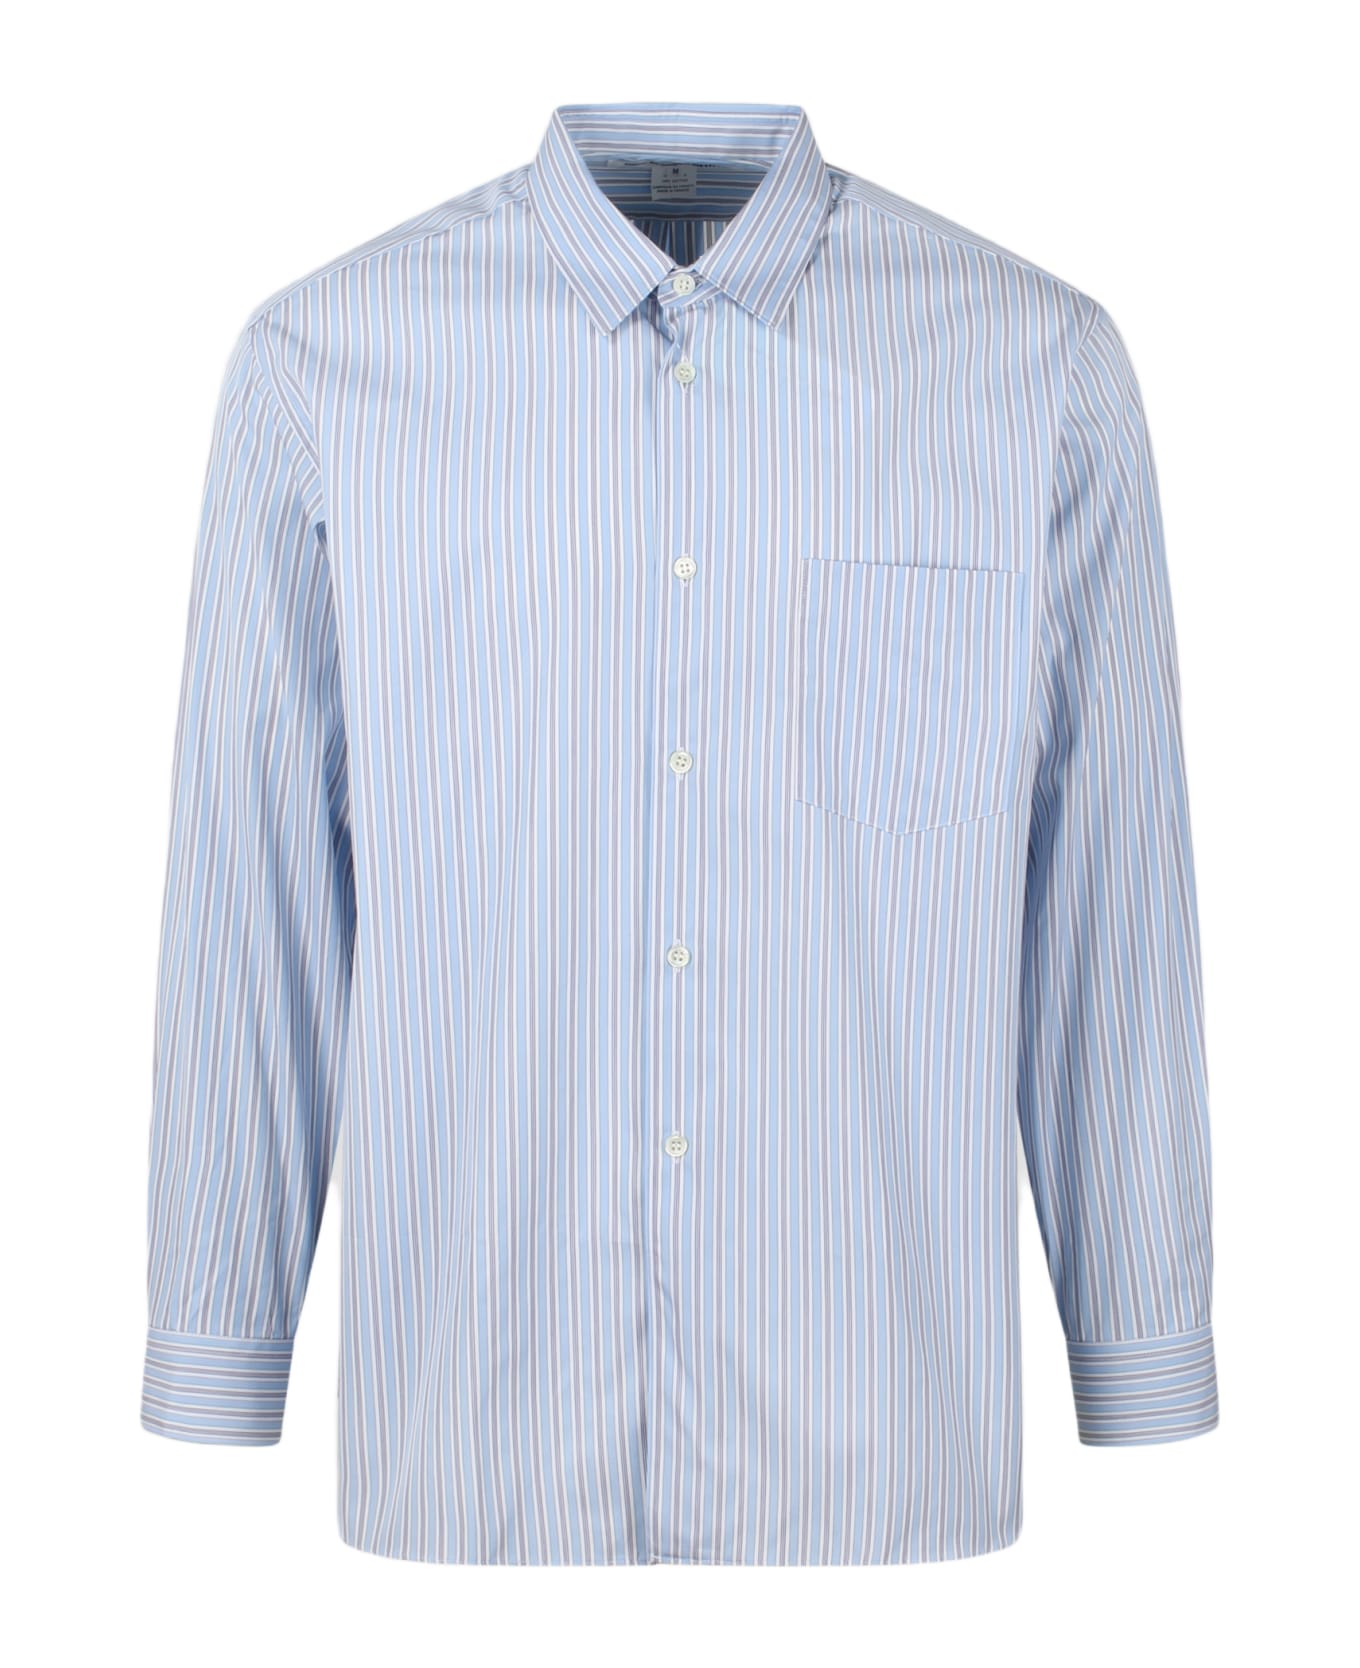 Comme des Garçons Shirt Striped Long Sleeve Shirt - Blue